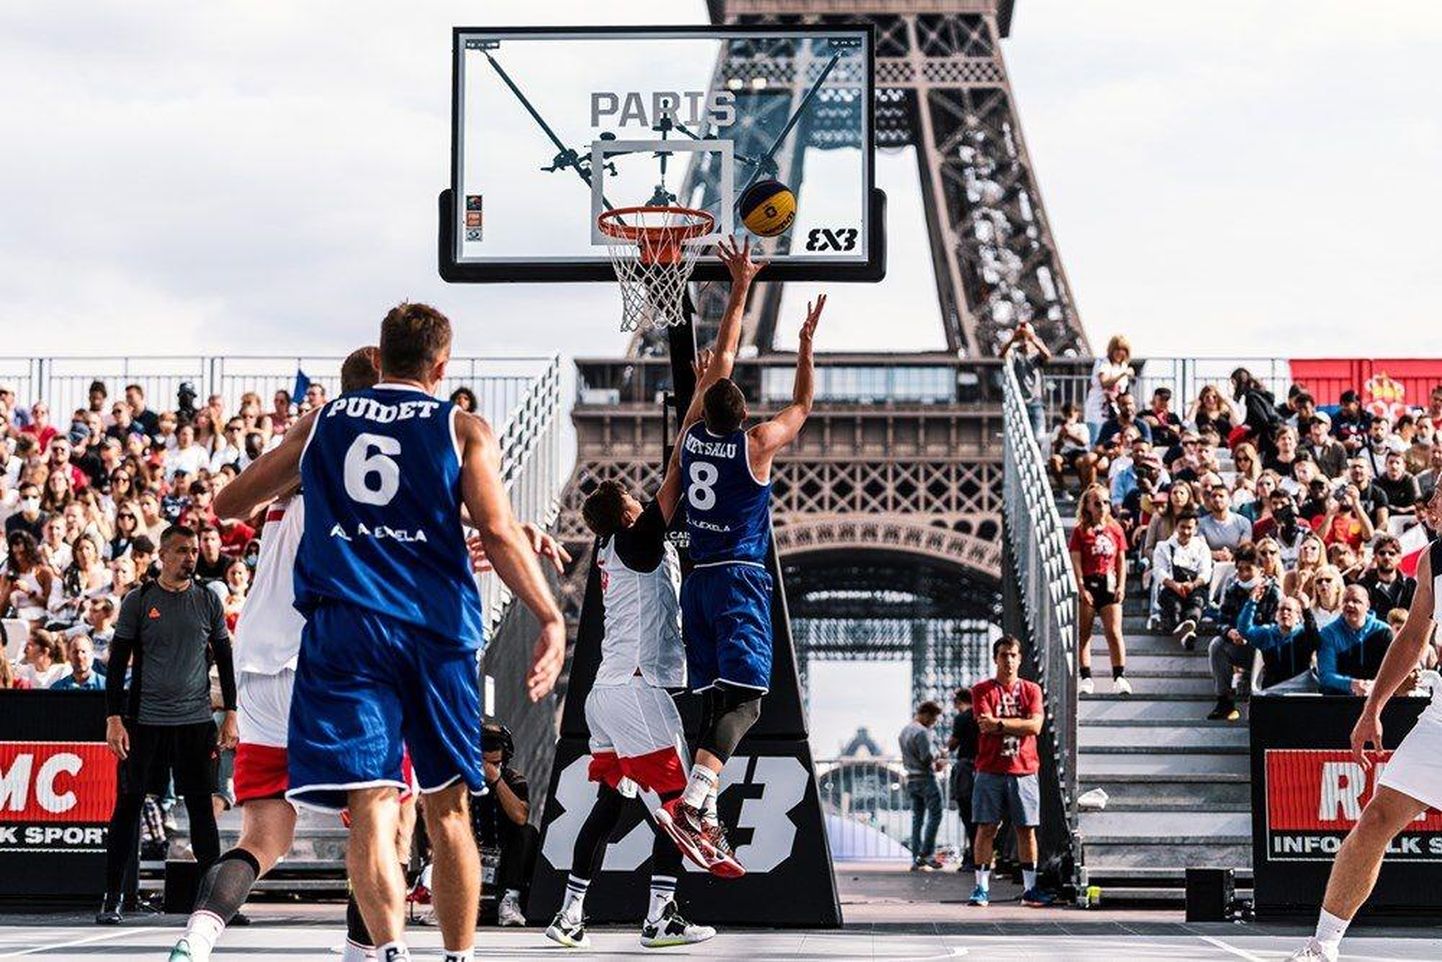 Eesti korvpallurid võitlevad Eiffeli torni all peetavas EMi veerandfinaalmängus Venemaaga. Korvi ründab Oliver Metsalu (nr 8), eemalt jälgib olukorda Jaan Puidet.